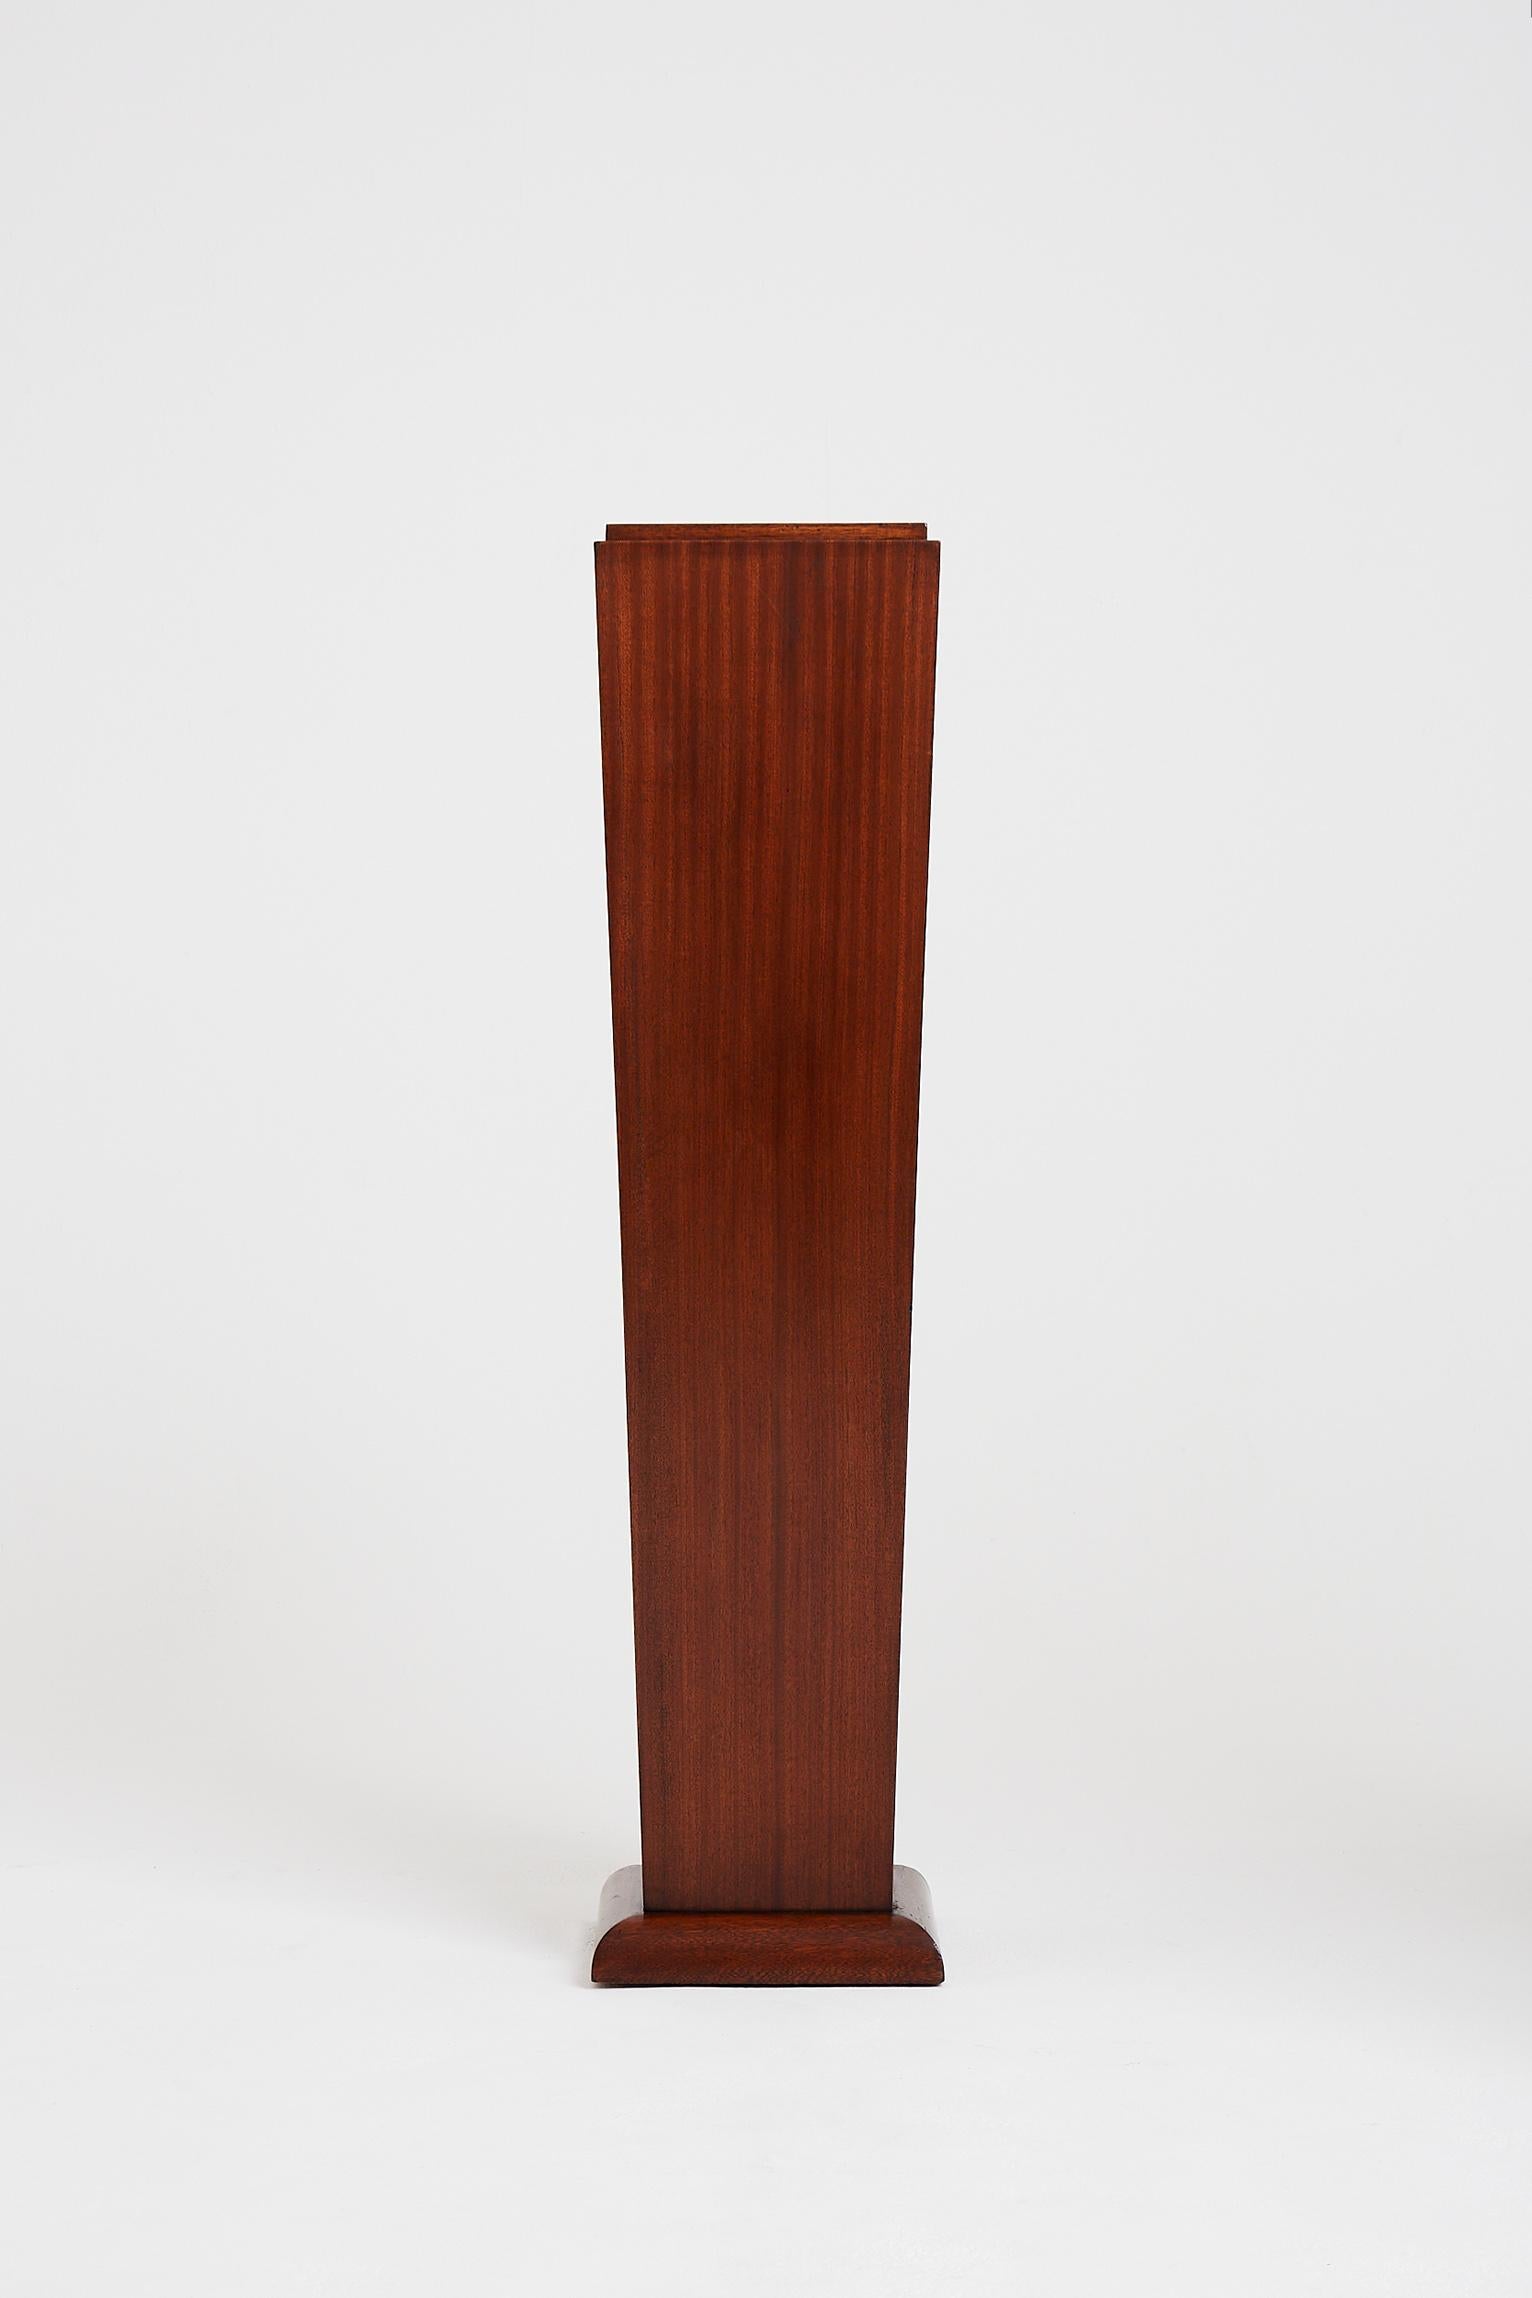 An Art Deco mahogany pedestal.
France, circa 1940.